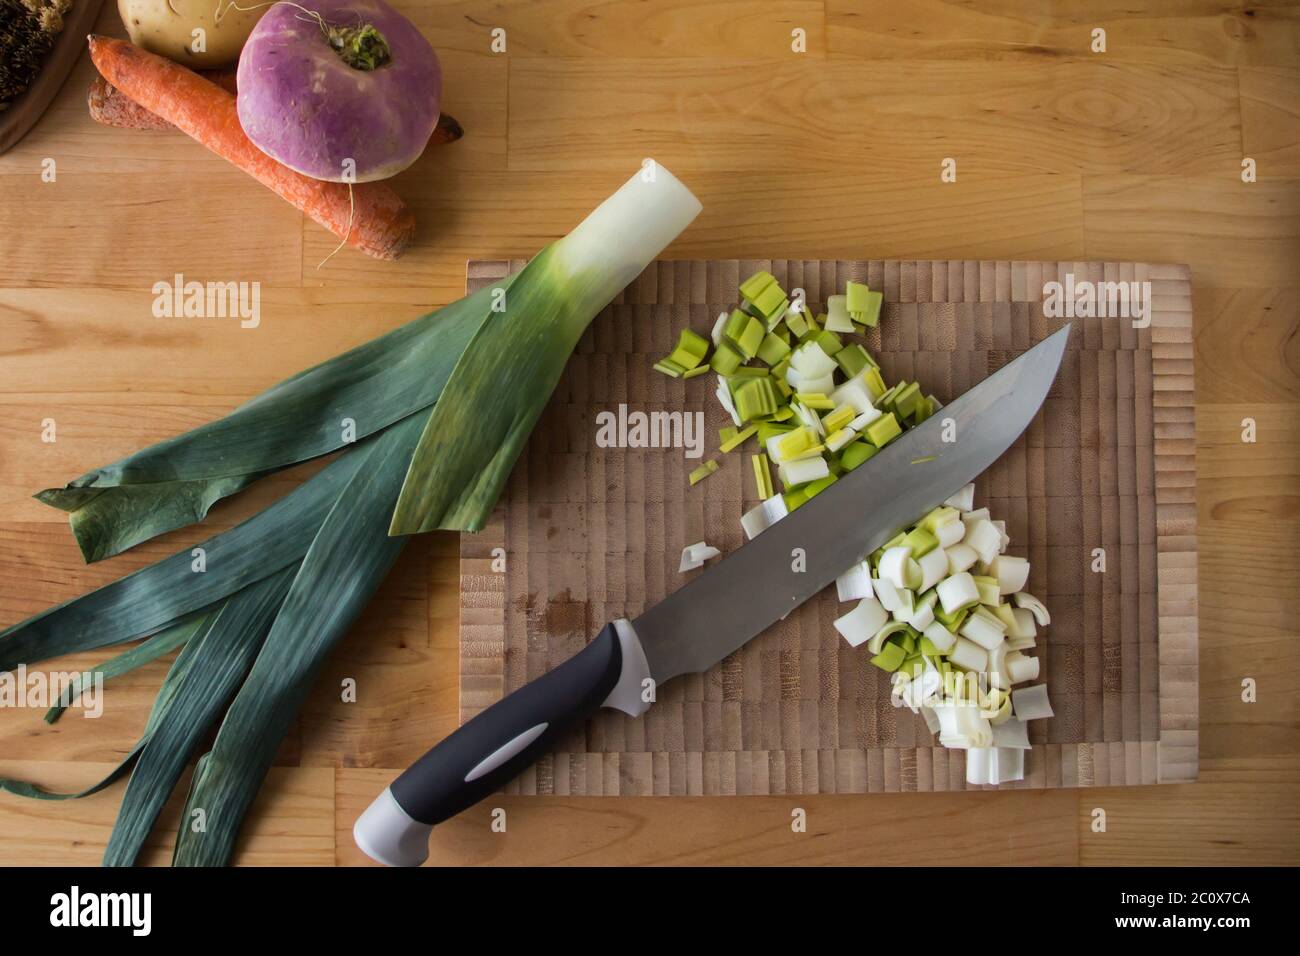 Vue de dessus d'une planche à découper, légumes d'hiver, brosse et couteau sur une table en bois Banque D'Images